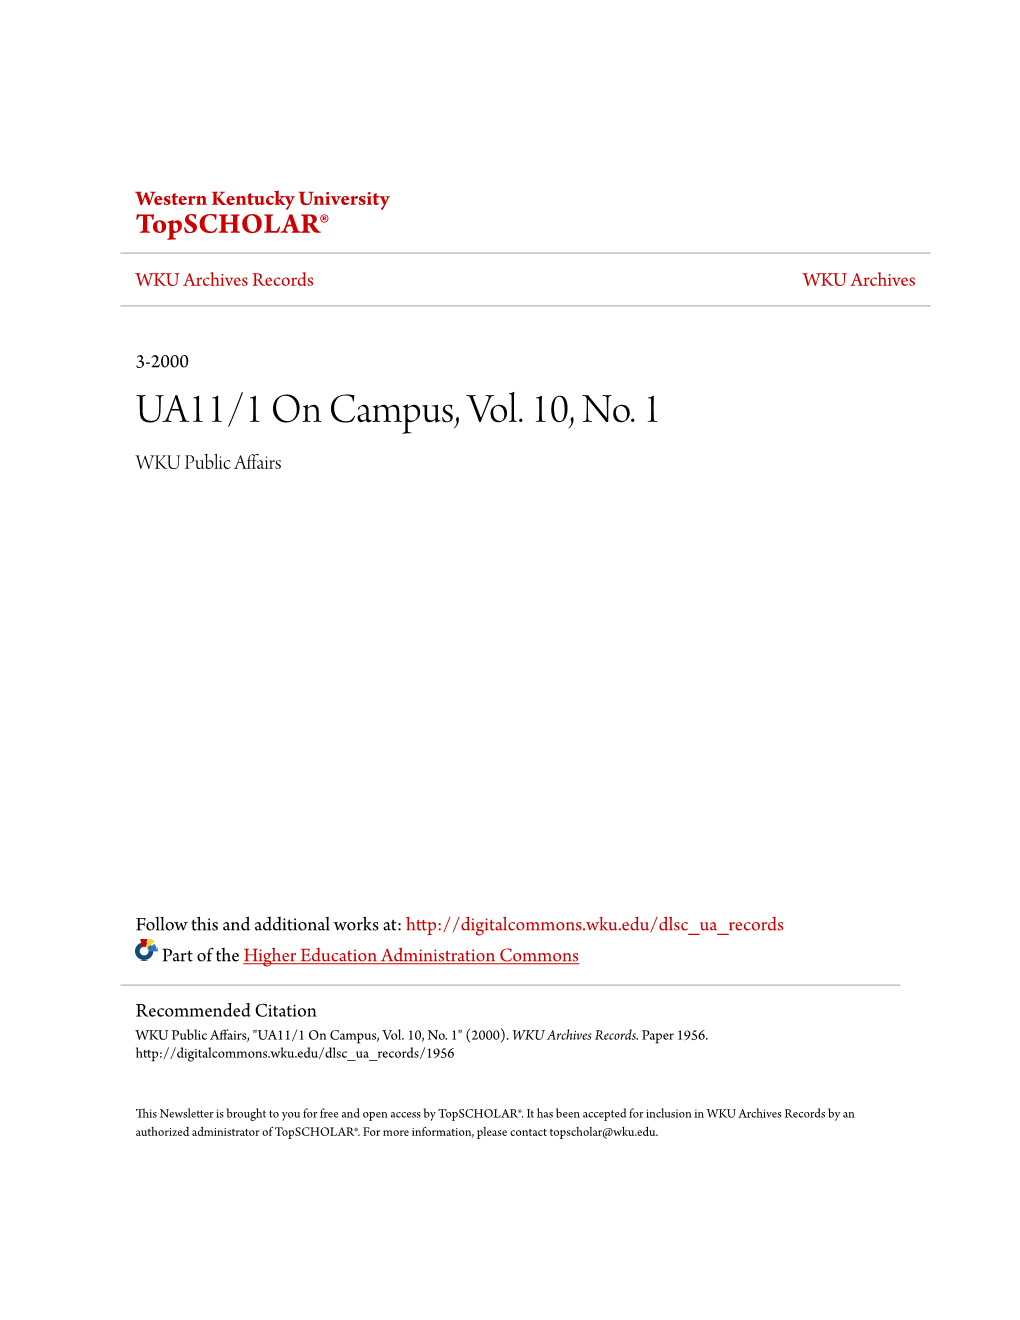 UA11/1 on Campus, Vol. 10, No. 1 WKU Public Affairs